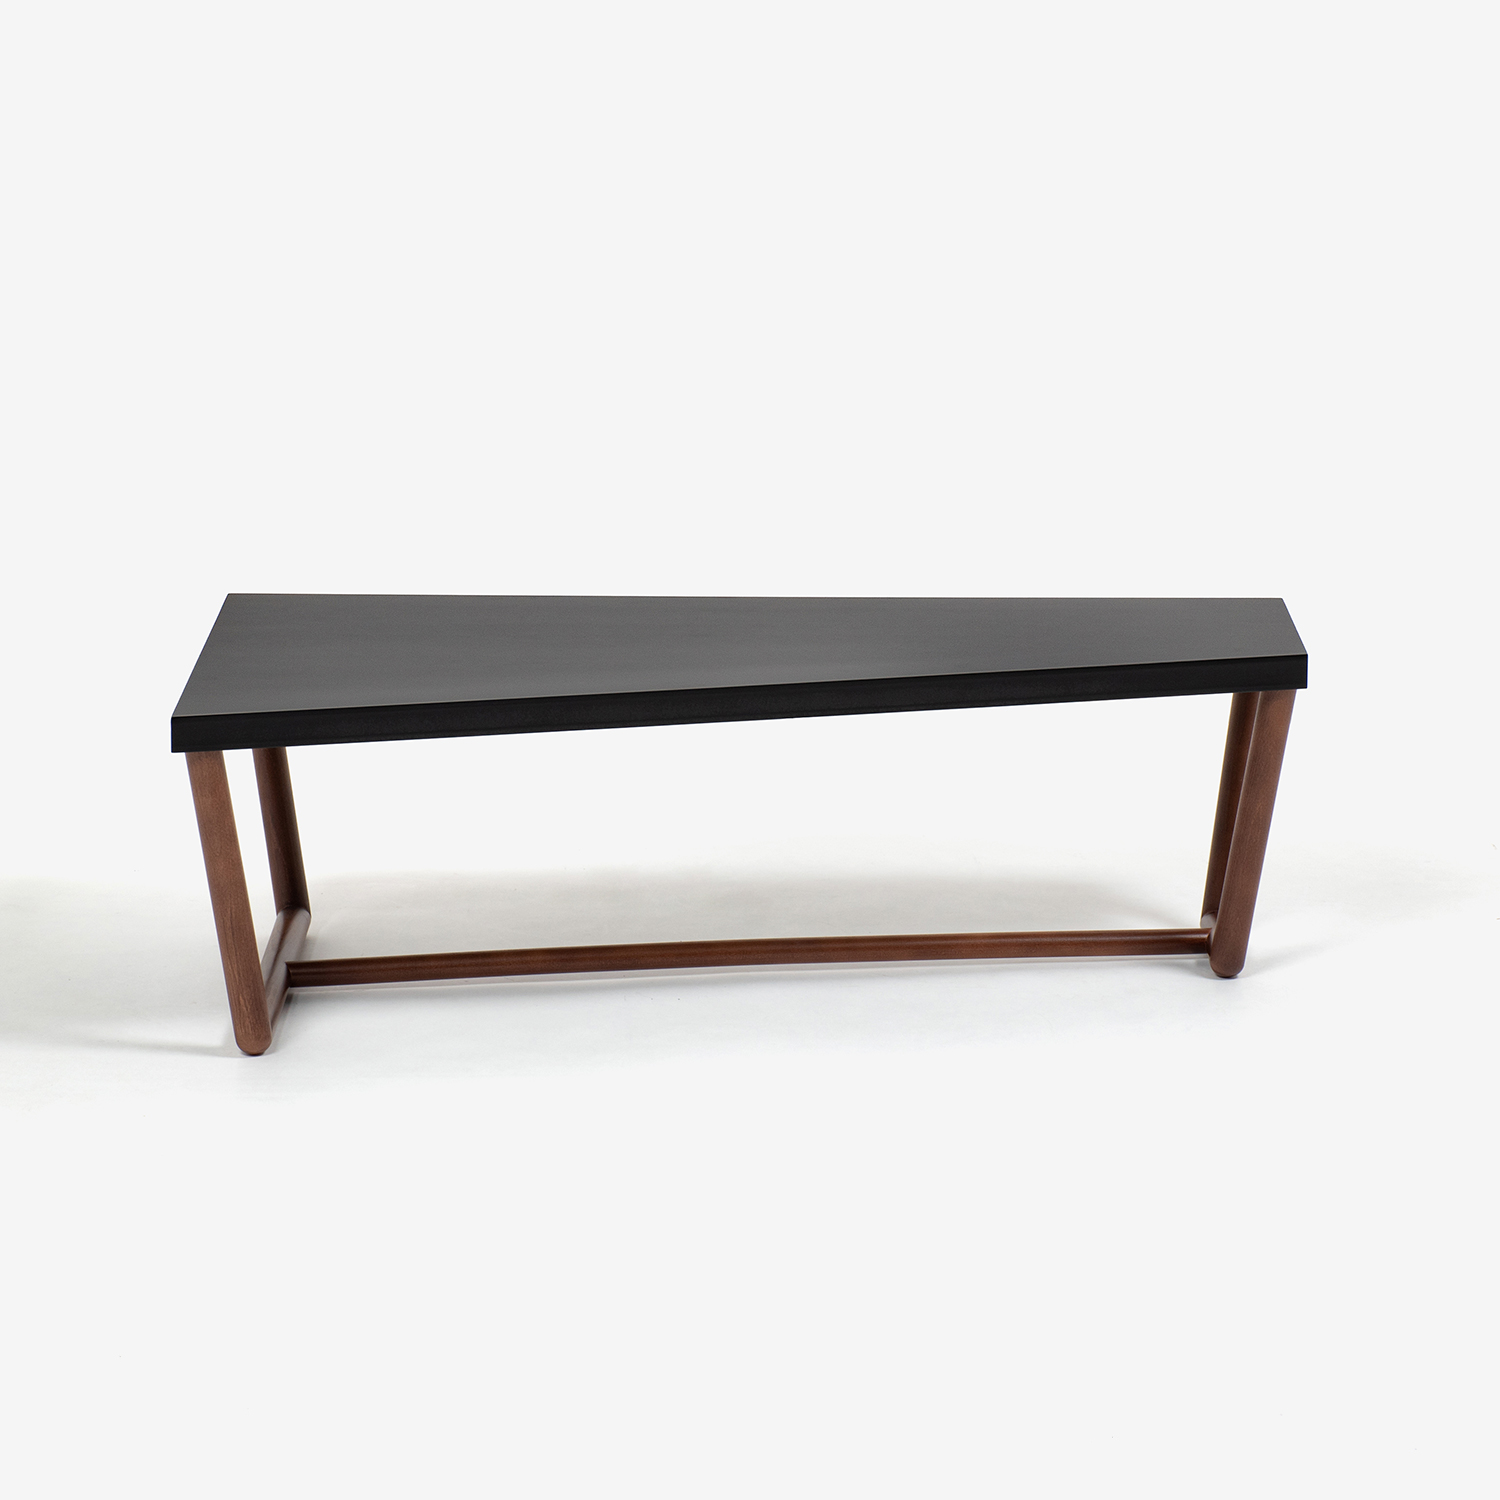 秋田木工 センターテーブル「KODトラペツィオ」 ナラ材ブラック/ウォールナット色